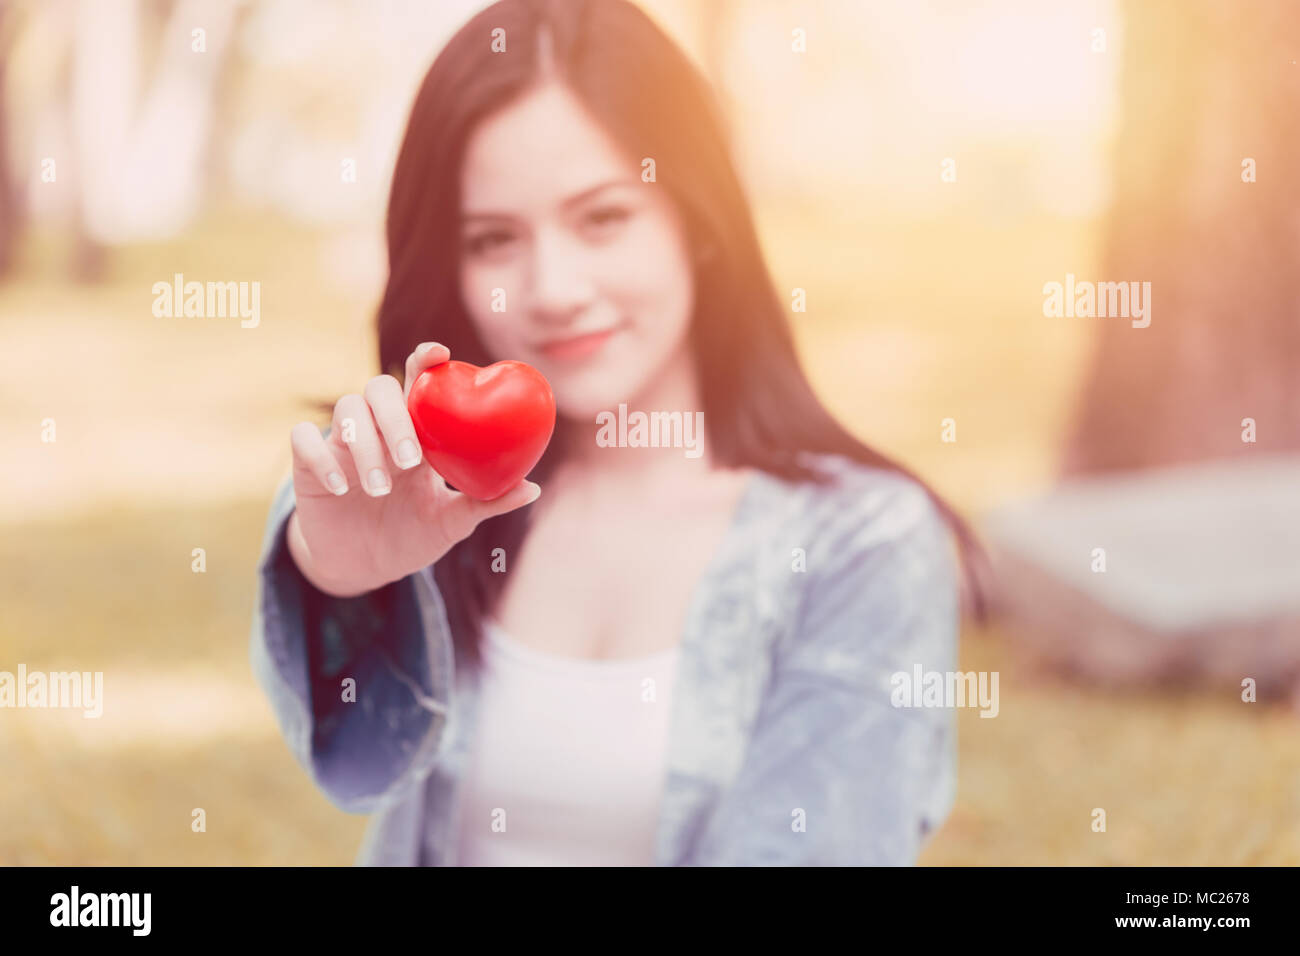 Süße asiatische Frau, rotes Herz vintage colortone Für teilen Liebe zusammen Konzept Stockfoto